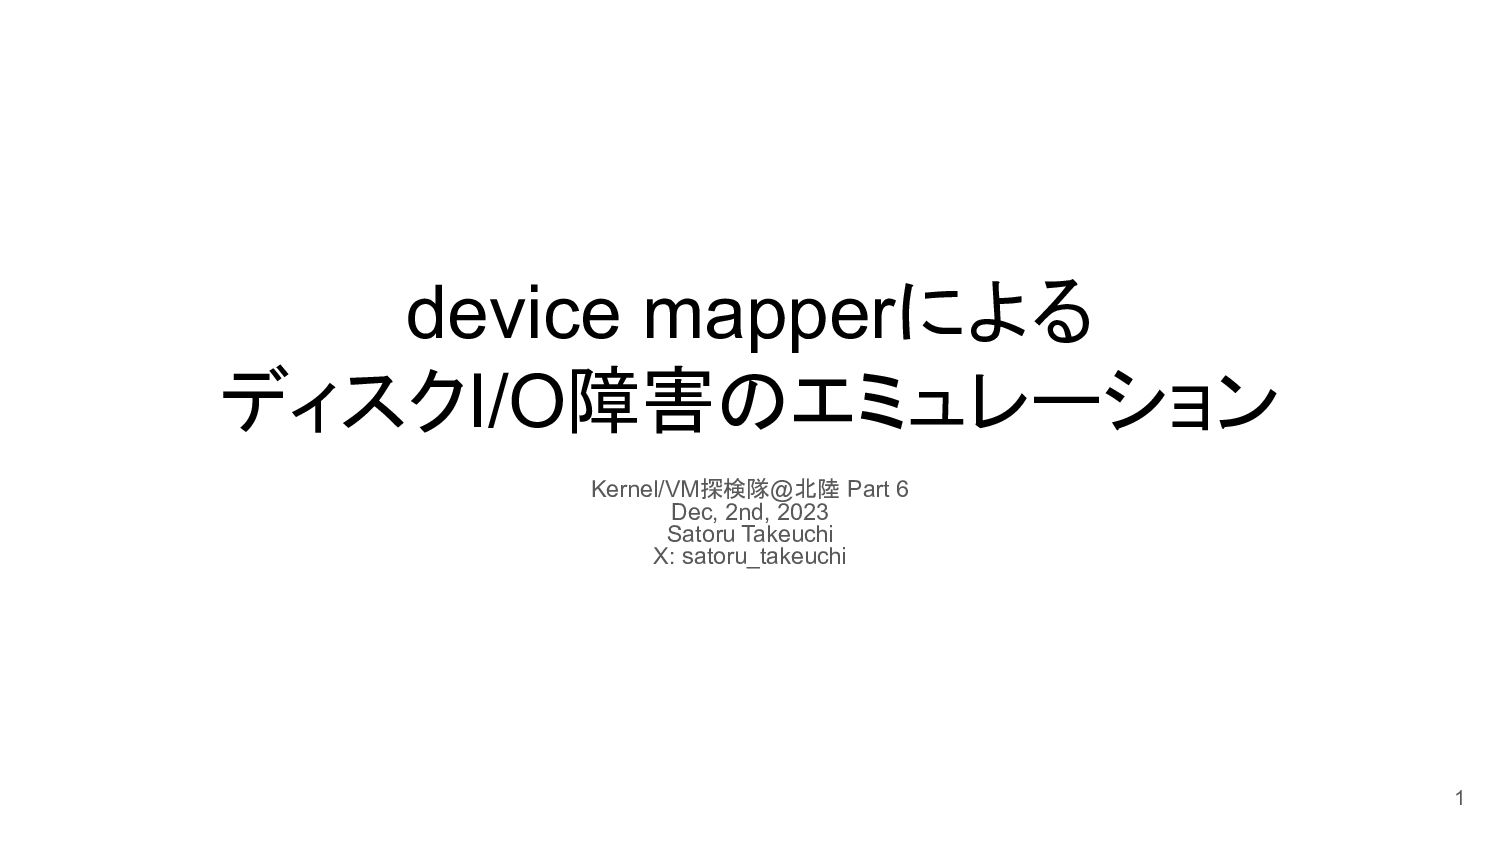 Slide Top: device mapperによるディスクI/O障害のエミュレーション